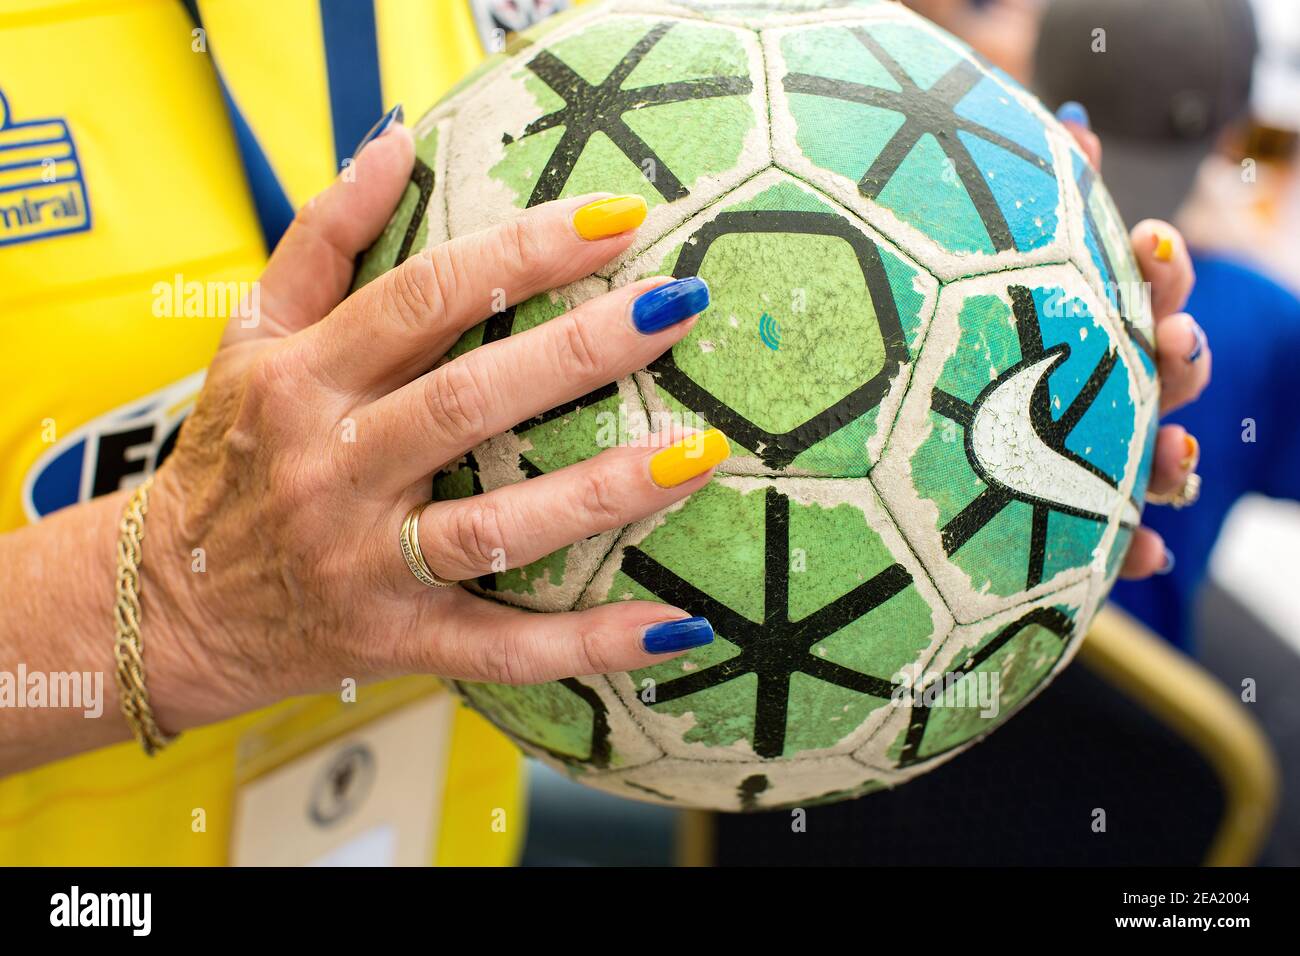 Le unghie dei tifosi femminili dipinte nel colore della squadra di calcio AFC Wimbledon, Inghilterra. Foto Stock